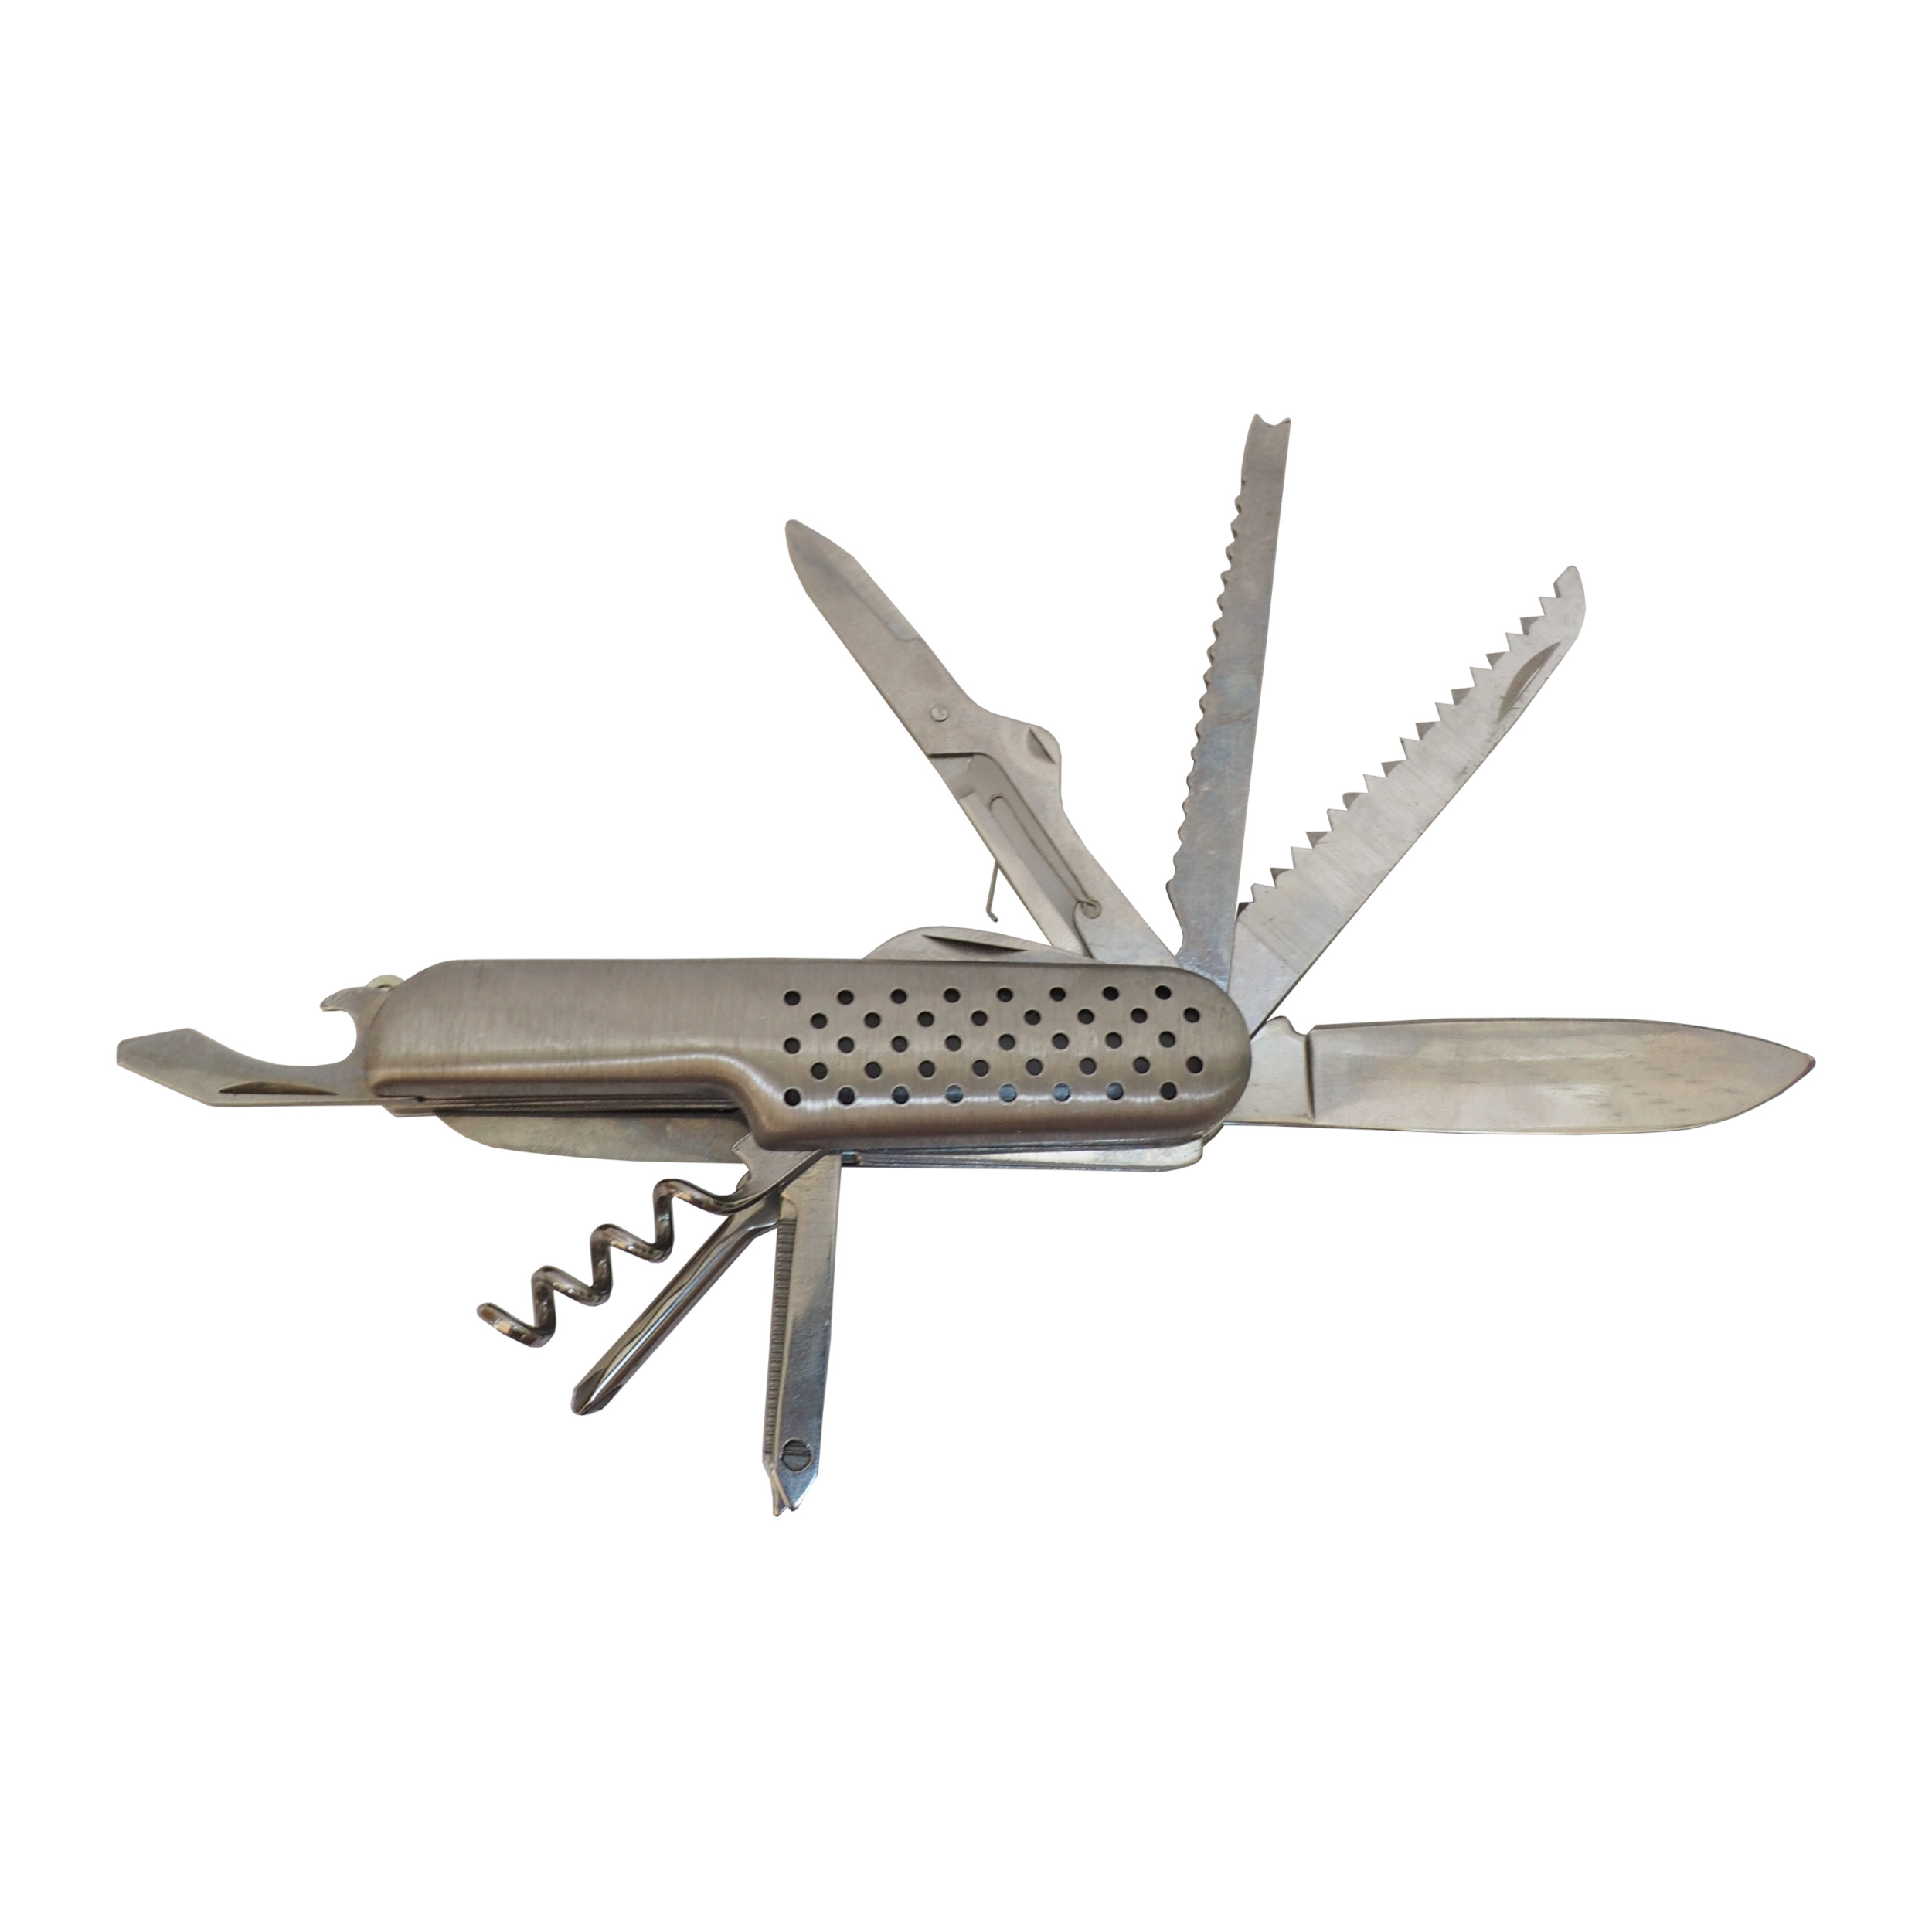 TOPTRADE nůž multifunkční, v prodejním kartonu, 11 funkcí, sada 12 ksxxx - BAZAR - nekompletní  9ks 1.40 Kg TOP Sklad4 200218.01 1